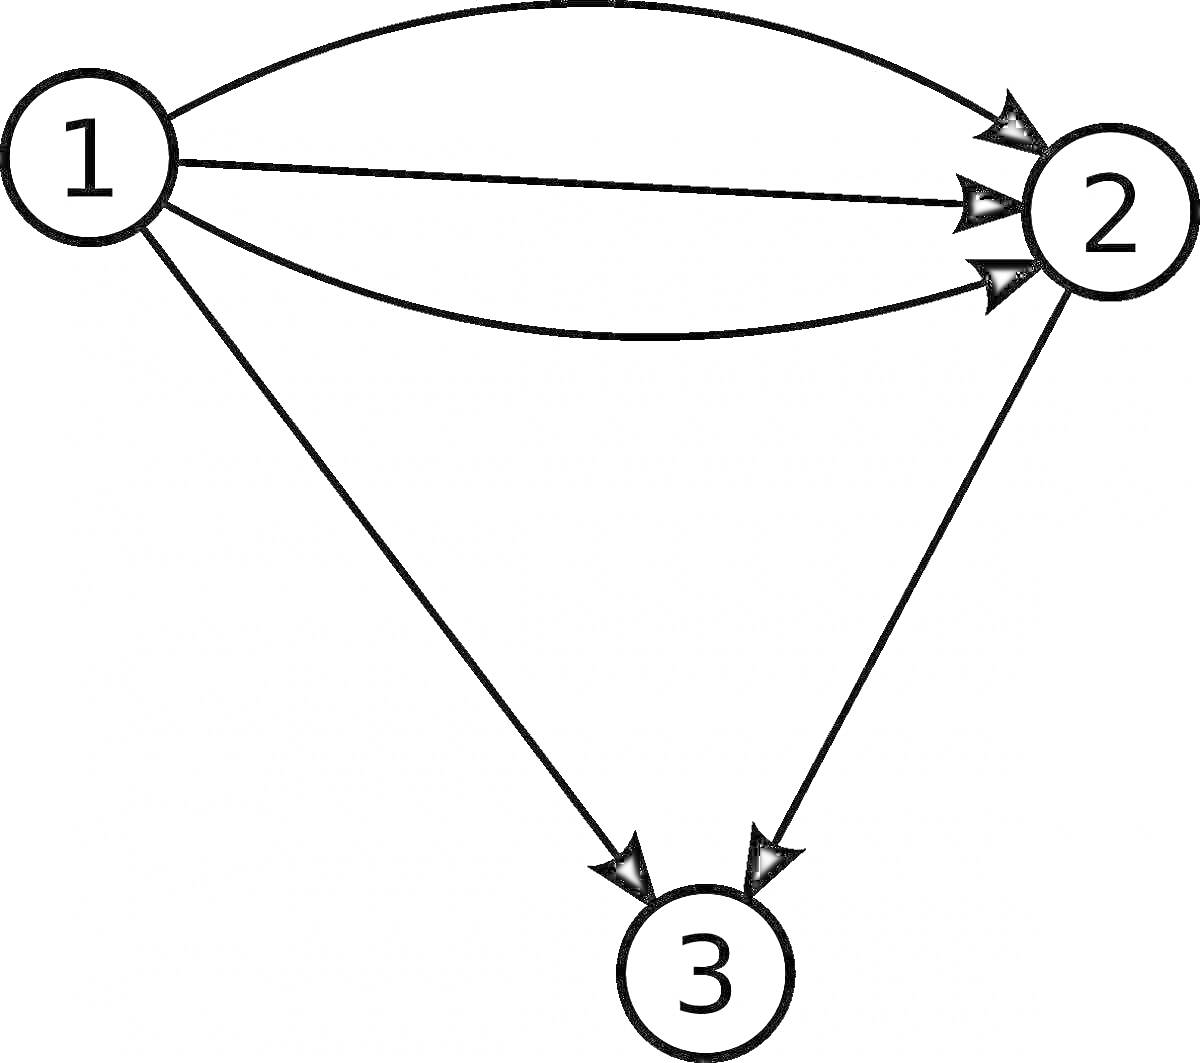 Раскраска Граф с вершинами и направленными рёбрами (1, 2, 3)